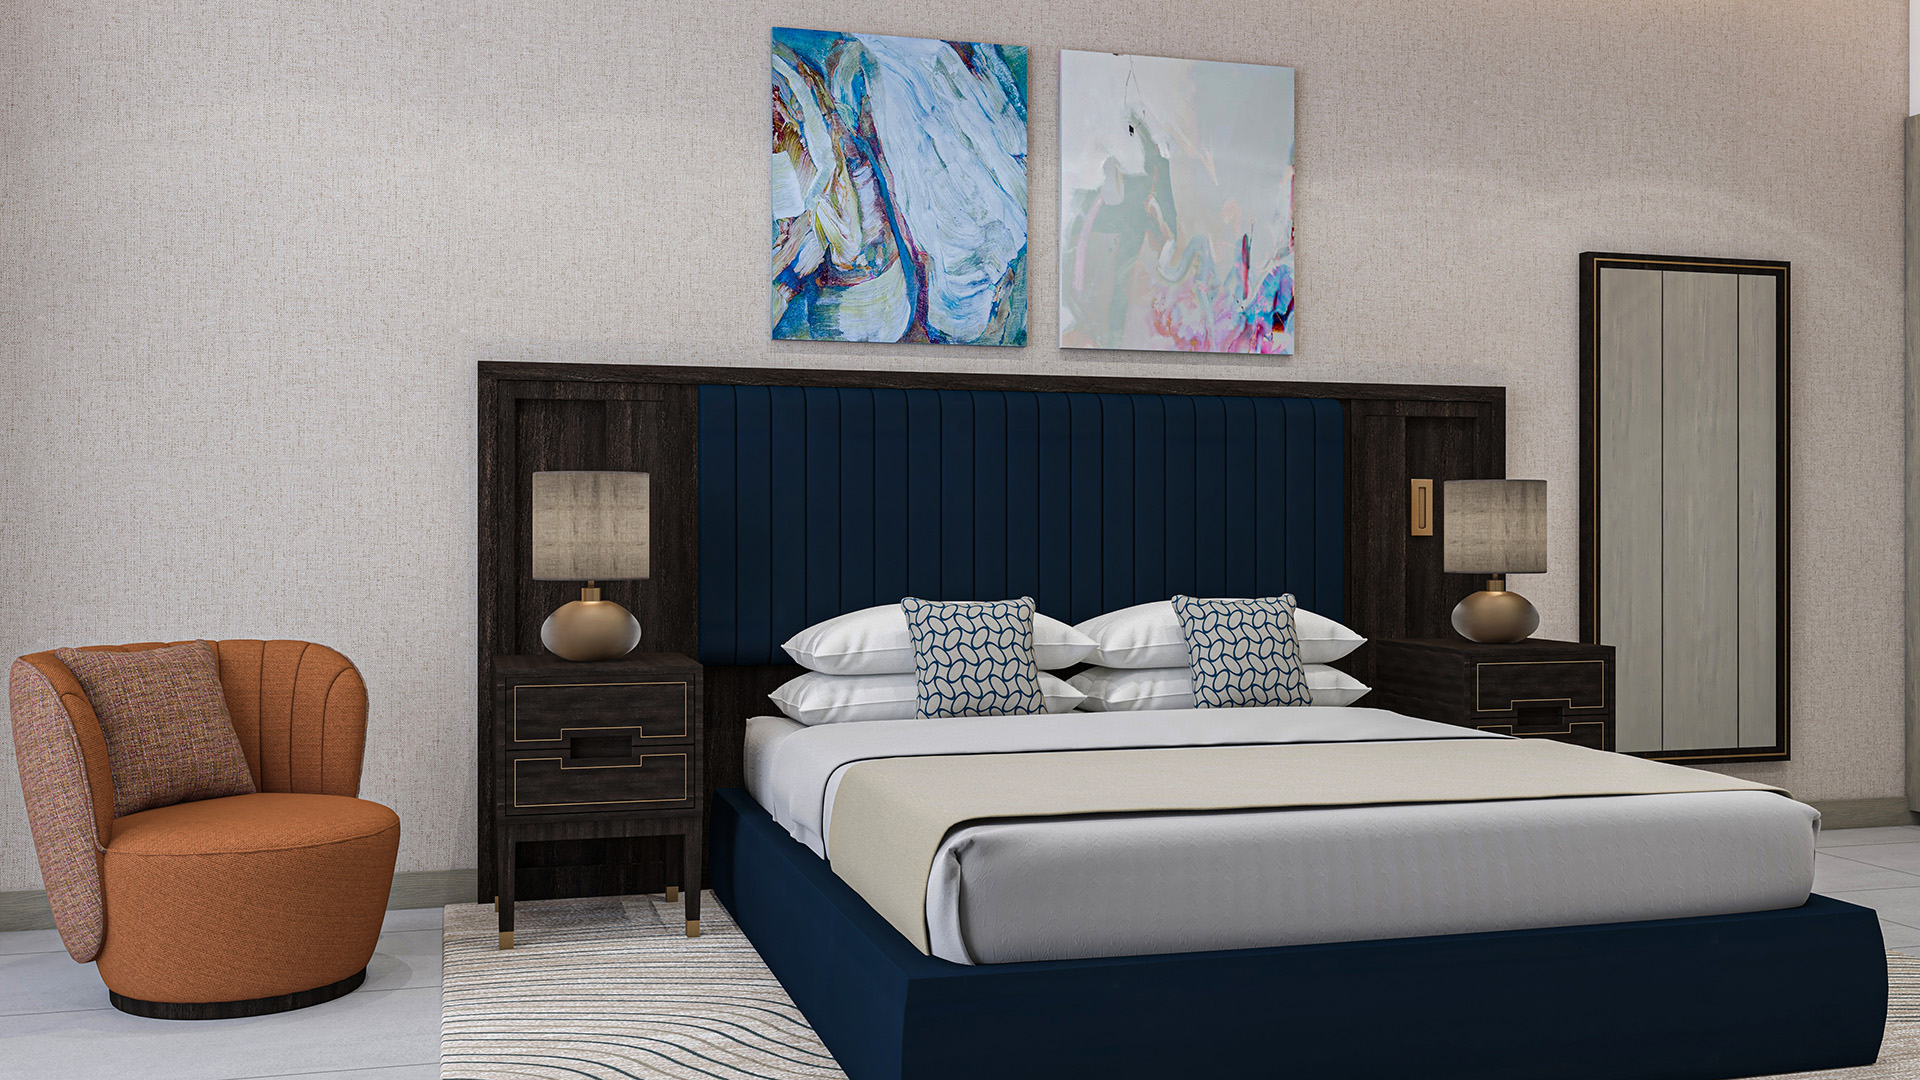 Luxury One-Bedroom Apartments